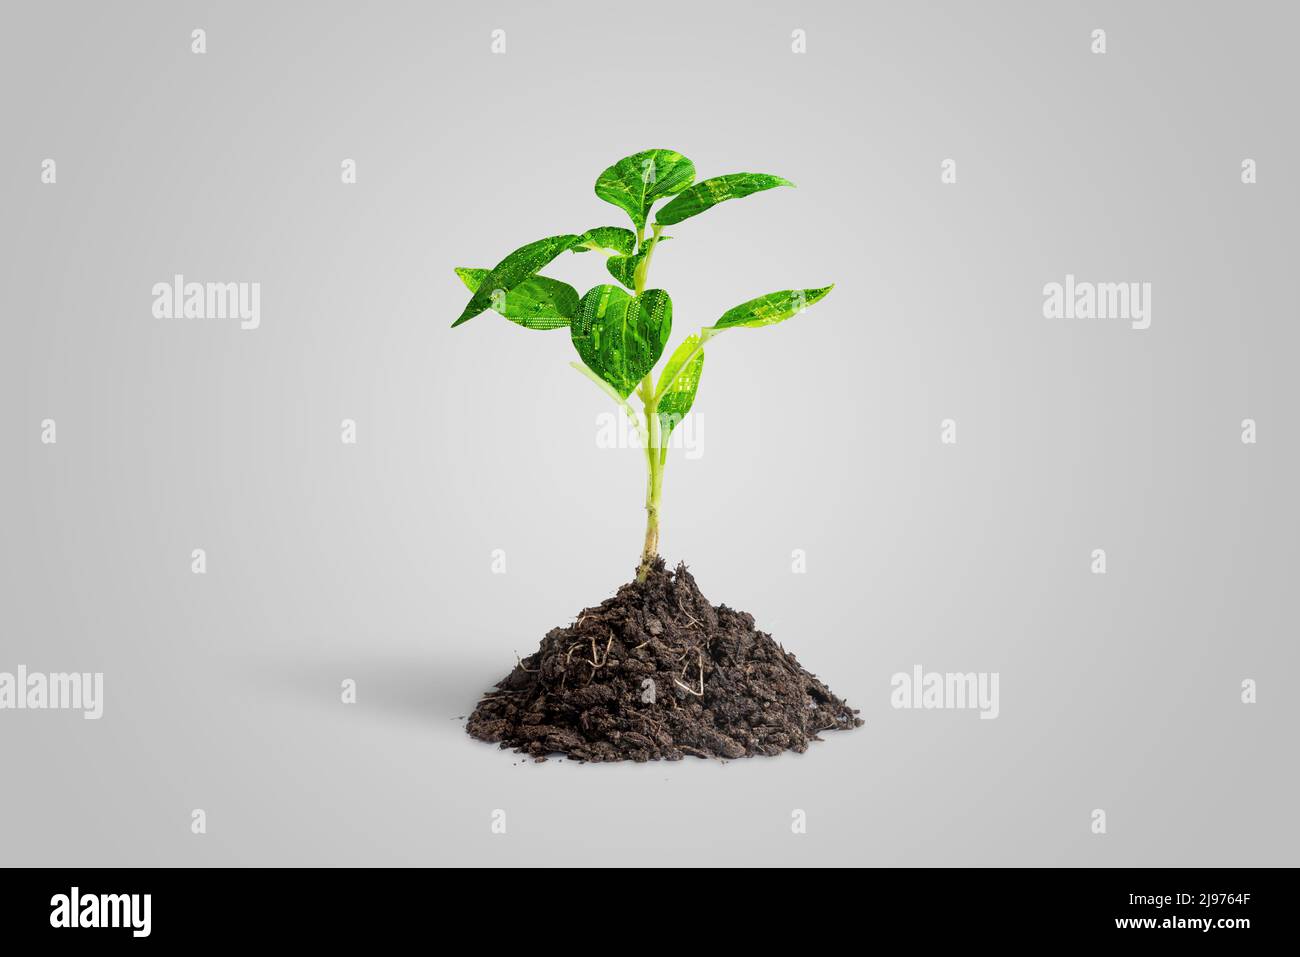 Künstliche Pflanze wächst aus natürlichem Boden. Die Blätter bestehen aus elektronischen Leiterplatten. Das Konzept des Einsatzes von Technologie in der Landwirtschaft Stockfoto